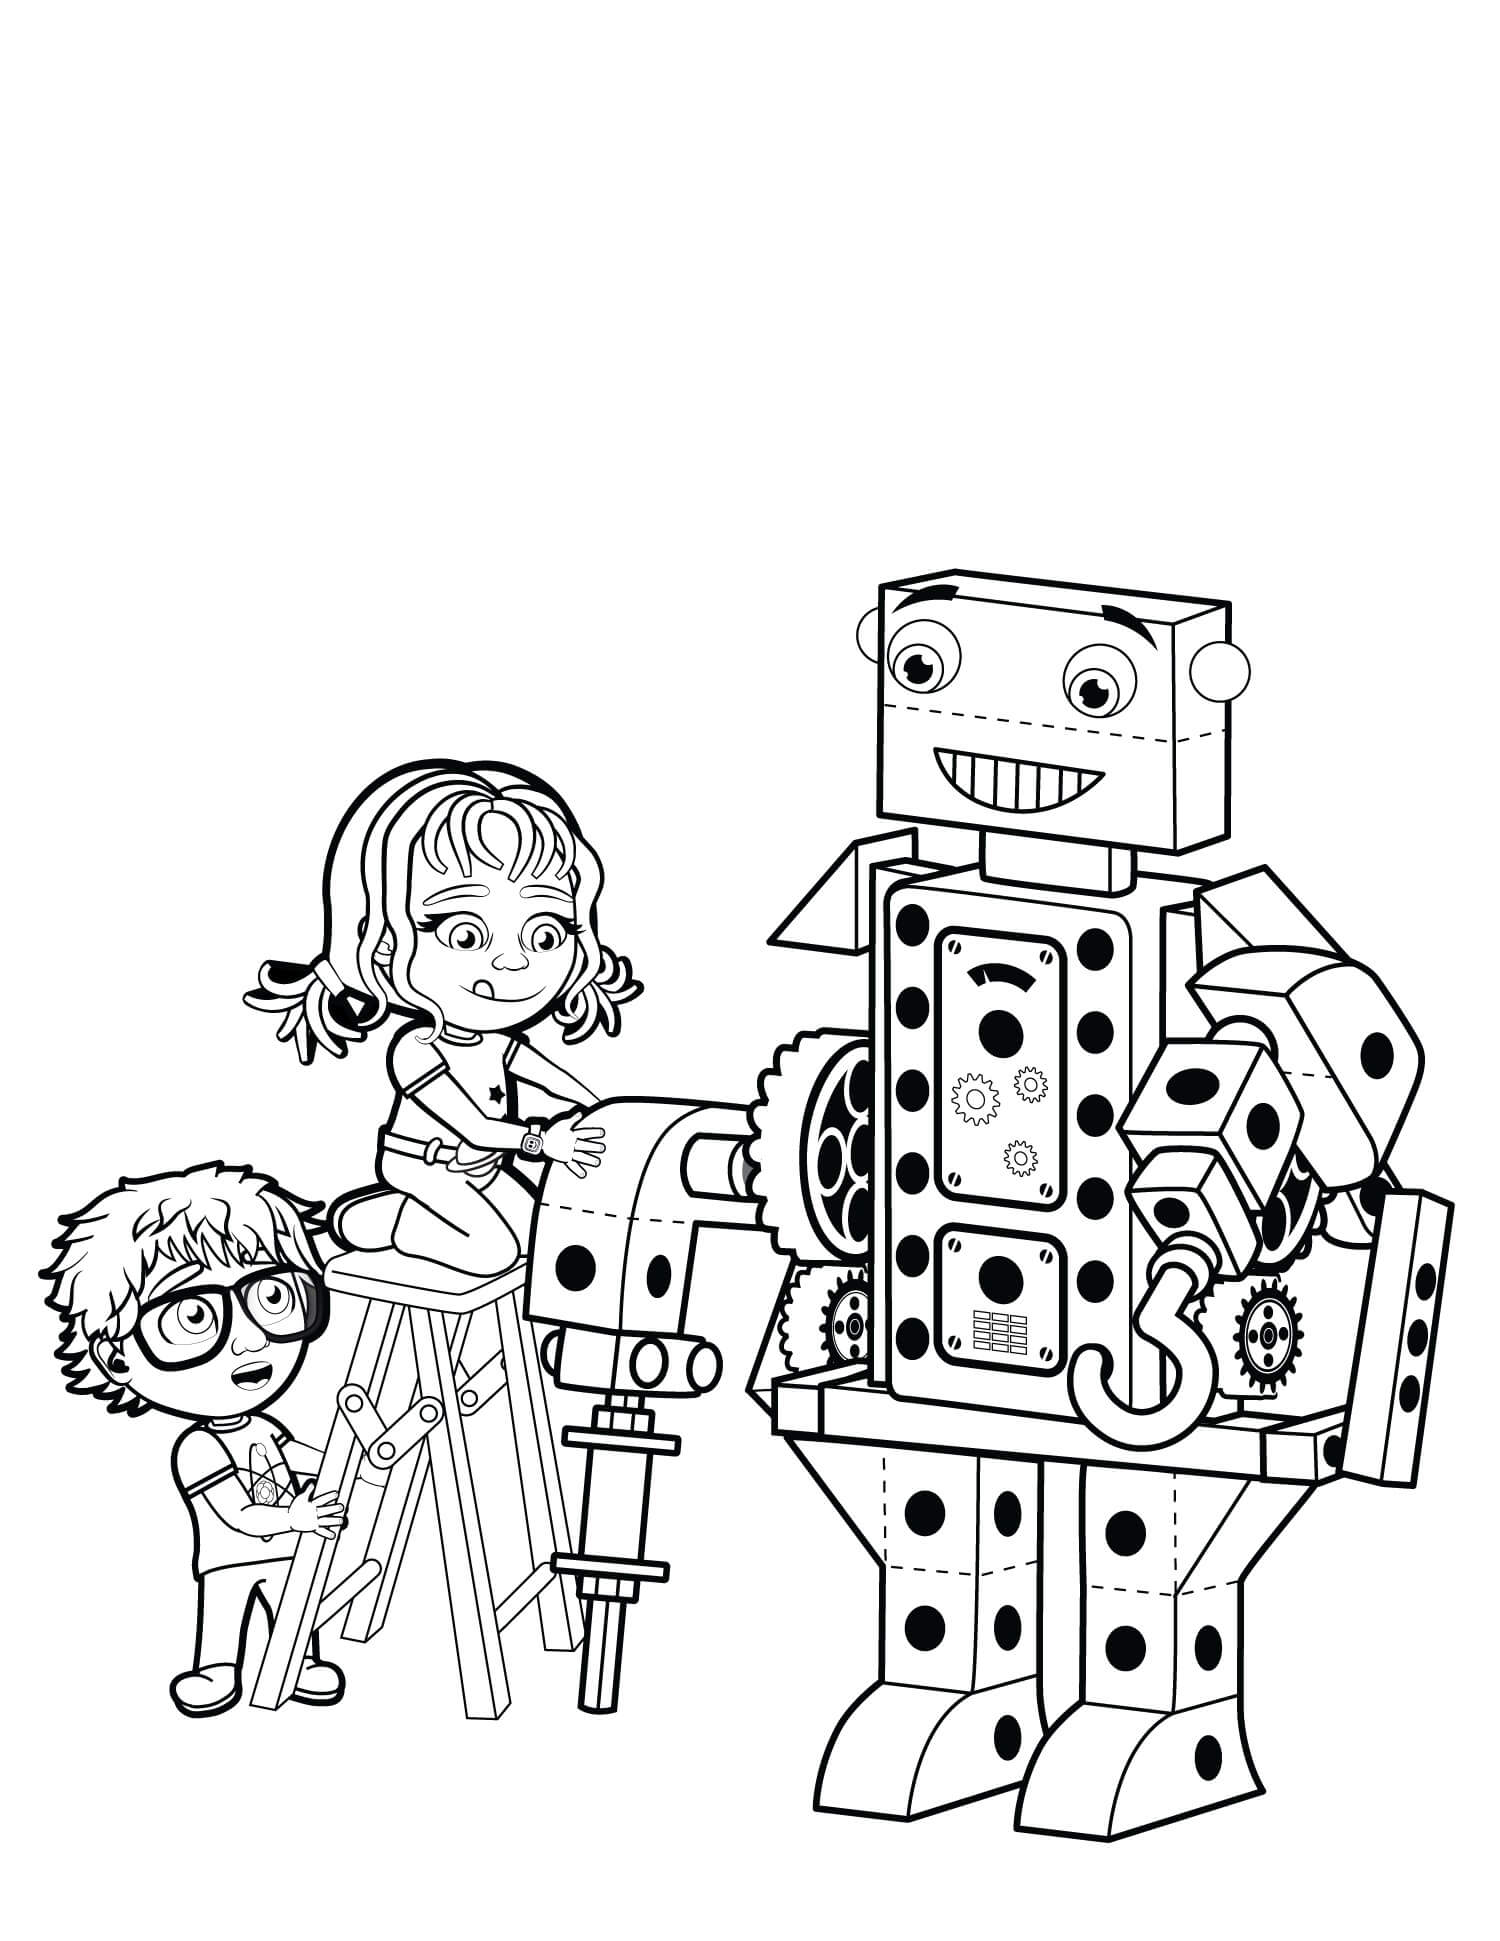 Primera Construcción de Robots para Niños